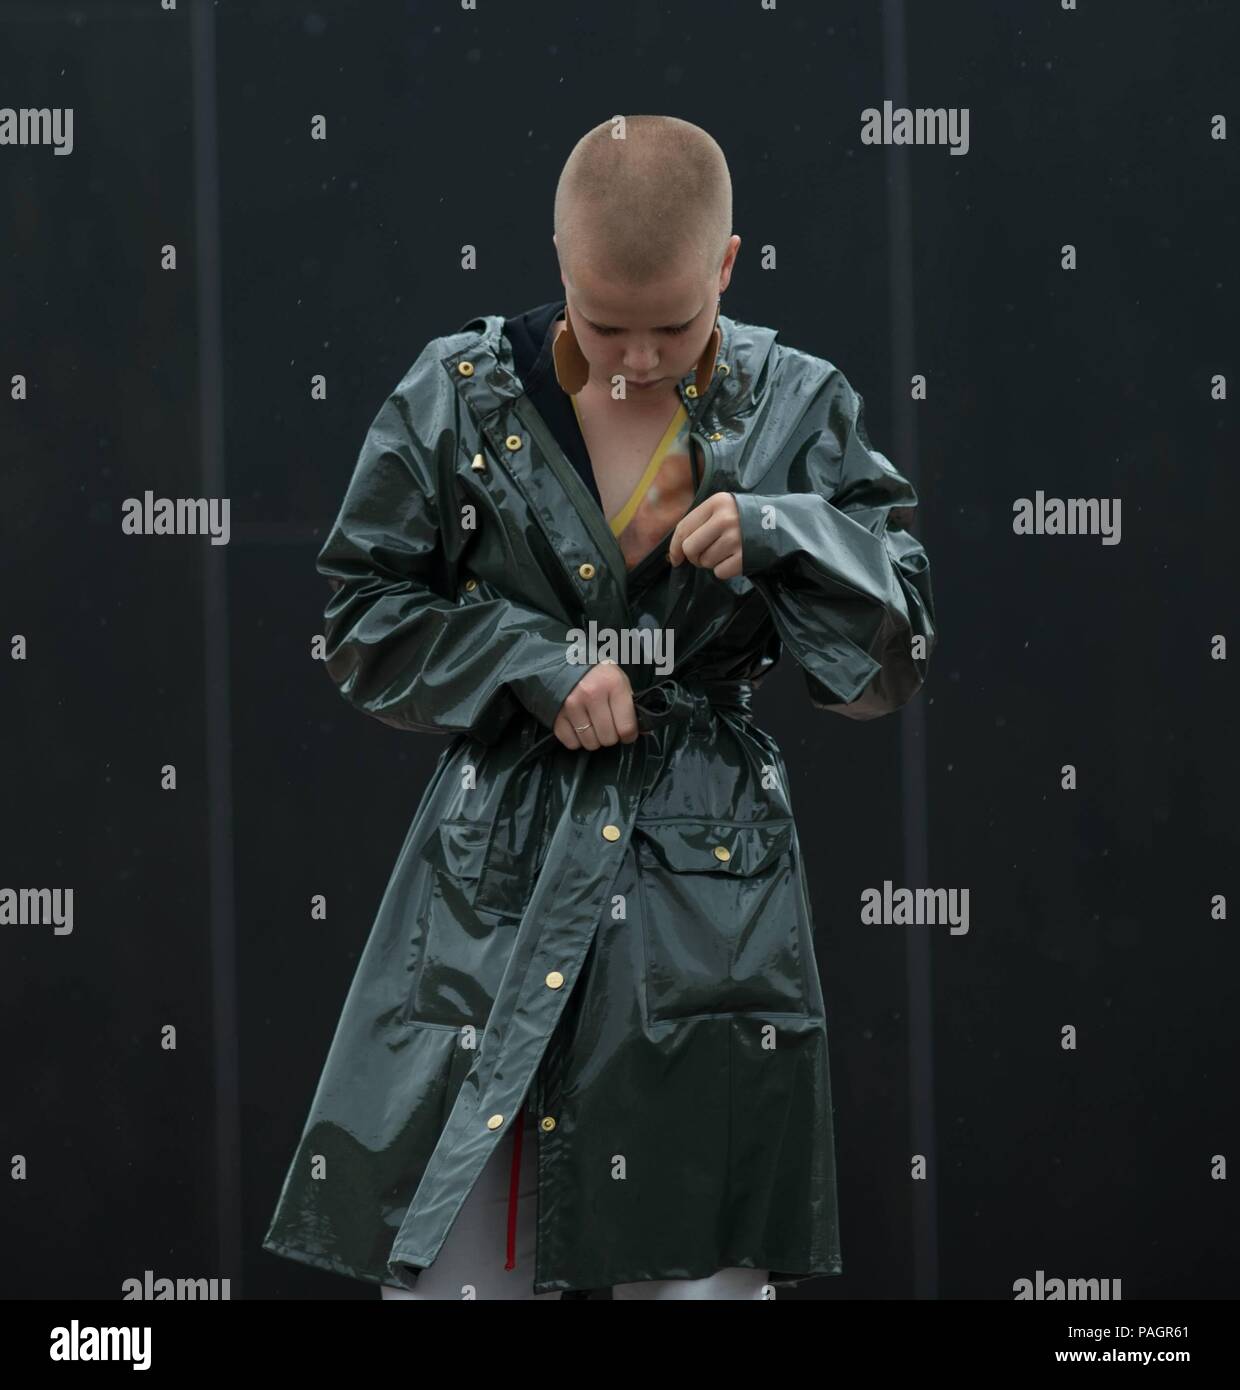 Ein schickes showgoer außerhalb der Liisa Soolepp zeigen posiert während Helsinki Fashion Week - Juli 20, 2018 - Foto: Start- und Landebahn Manhattan | Verwendung weltweit Stockfoto